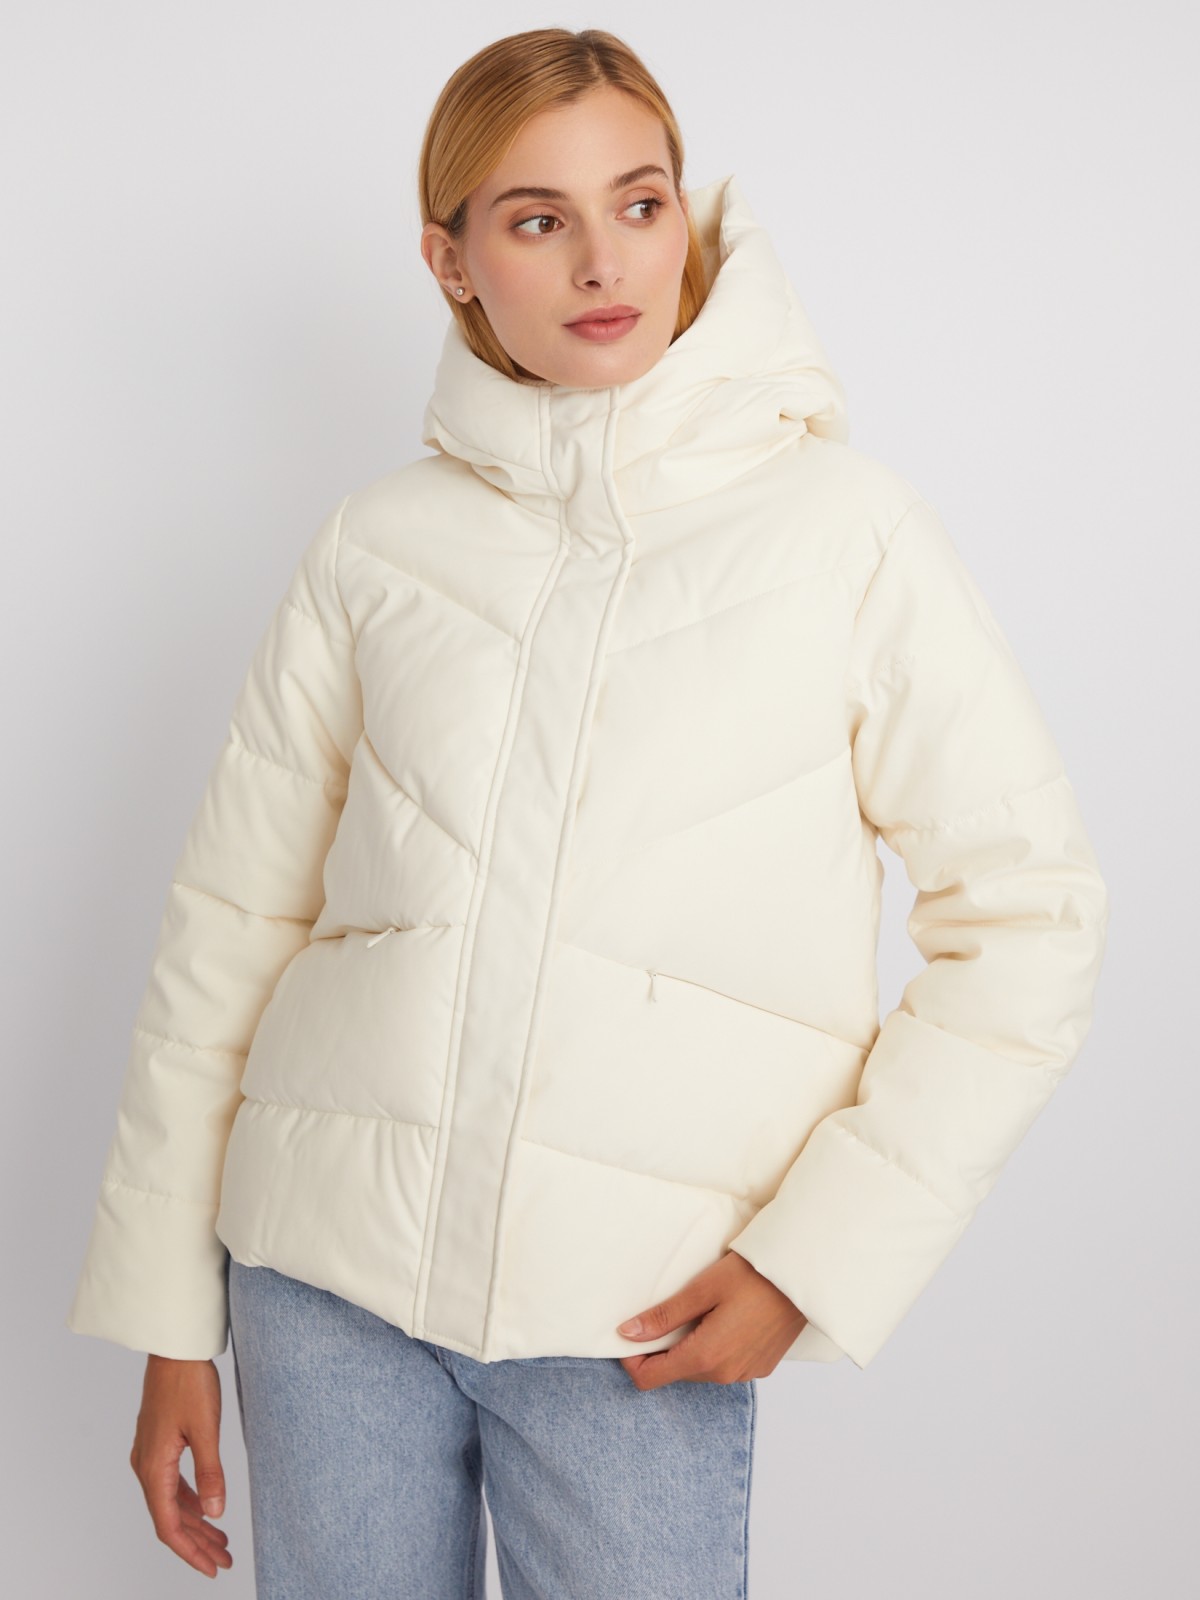 Тёплая стёганая дутая куртка с капюшоном zolla 023335102384, цвет молоко, размер M - фото 1